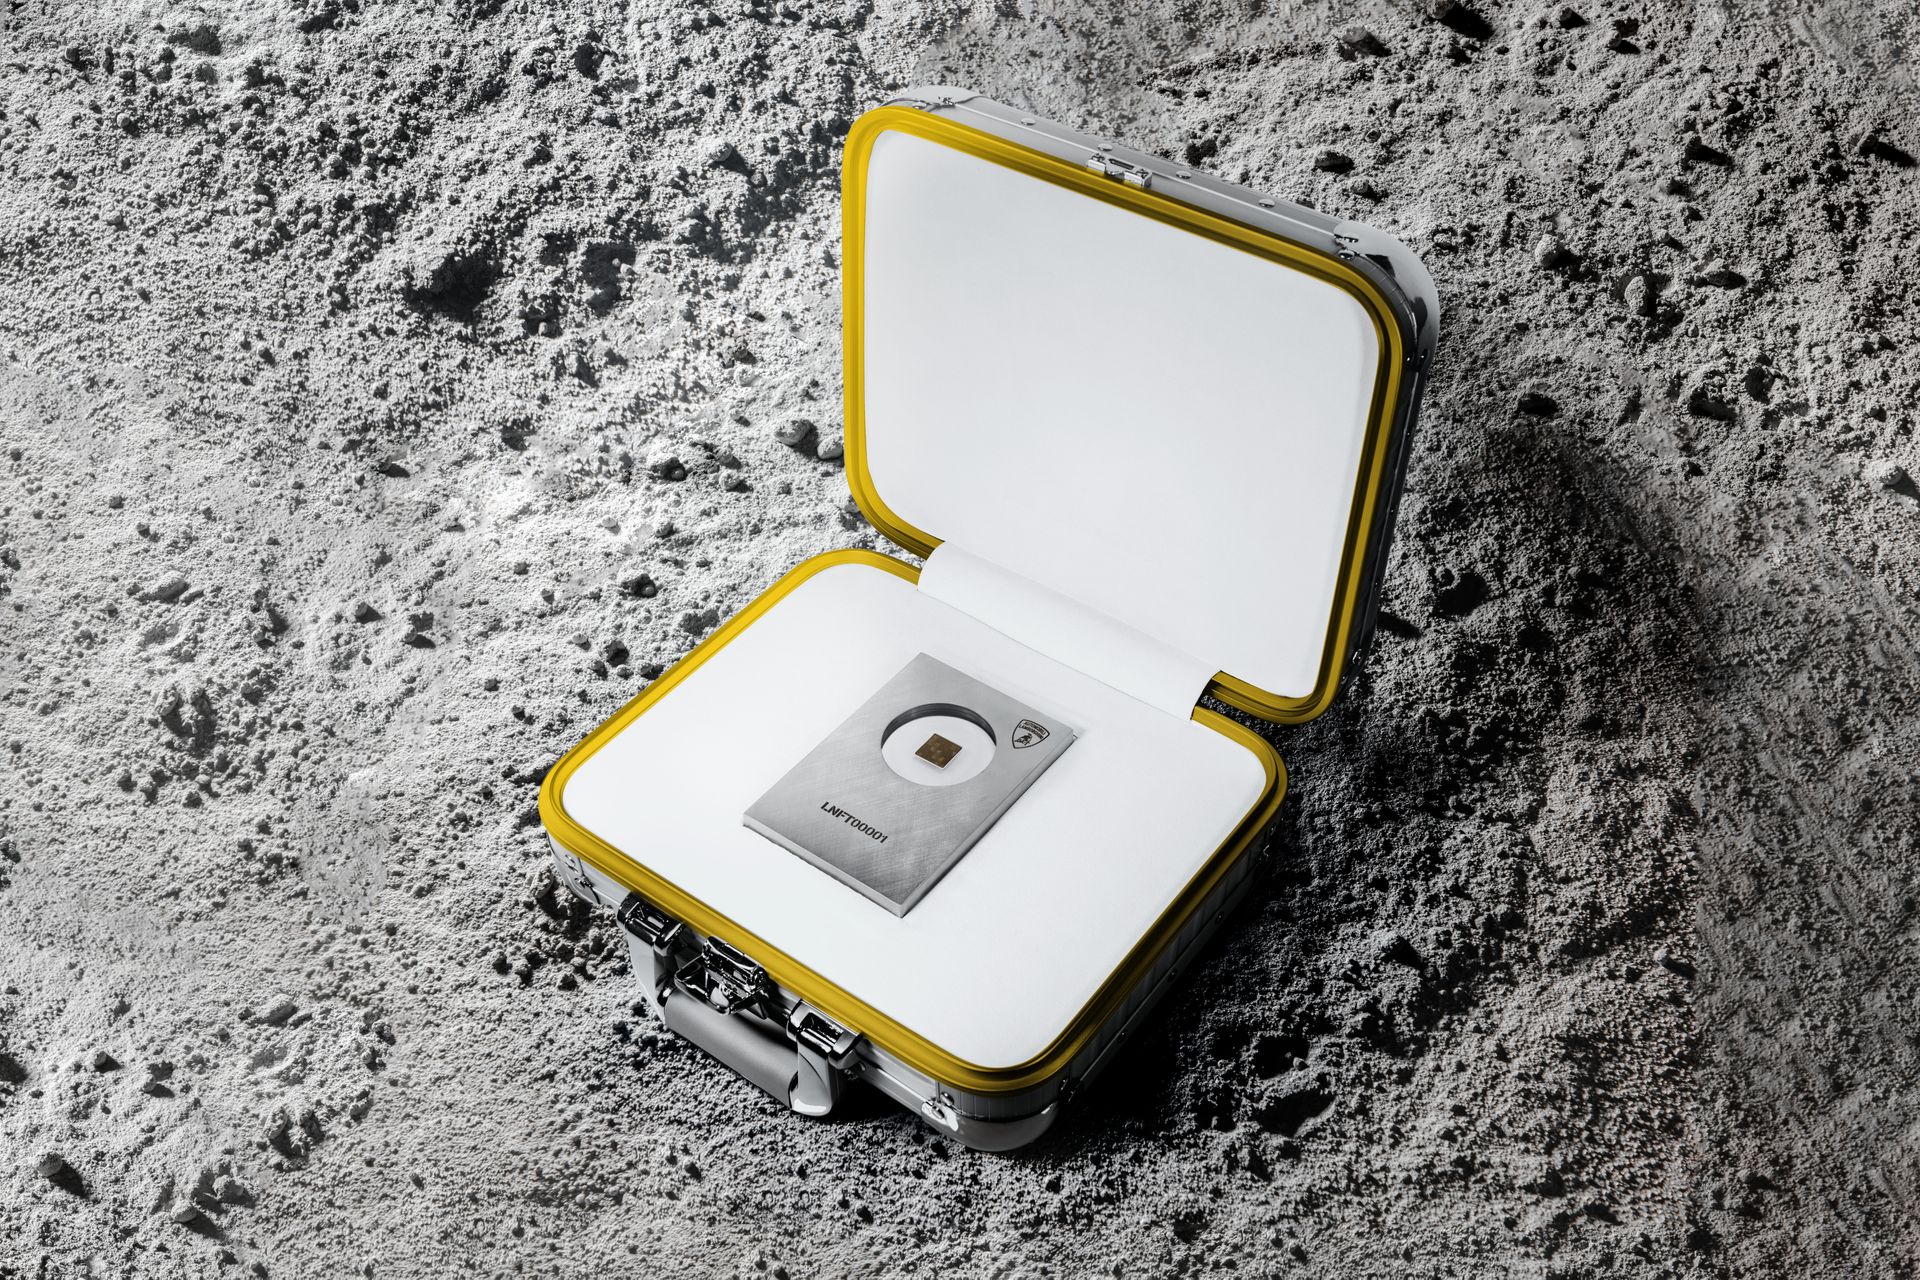 Var och en av de fem Automobili Lamborghini Space Keys, gjorda av ett kompositmaterial som skickades till den internationella rymdstationen (ISS) 2019 för extrema tester, är kopplade till ett unikt och exklusivt digitalt konstverk, skapat av konstnären själv via QR-koden som finns på baksidan av kolfibern